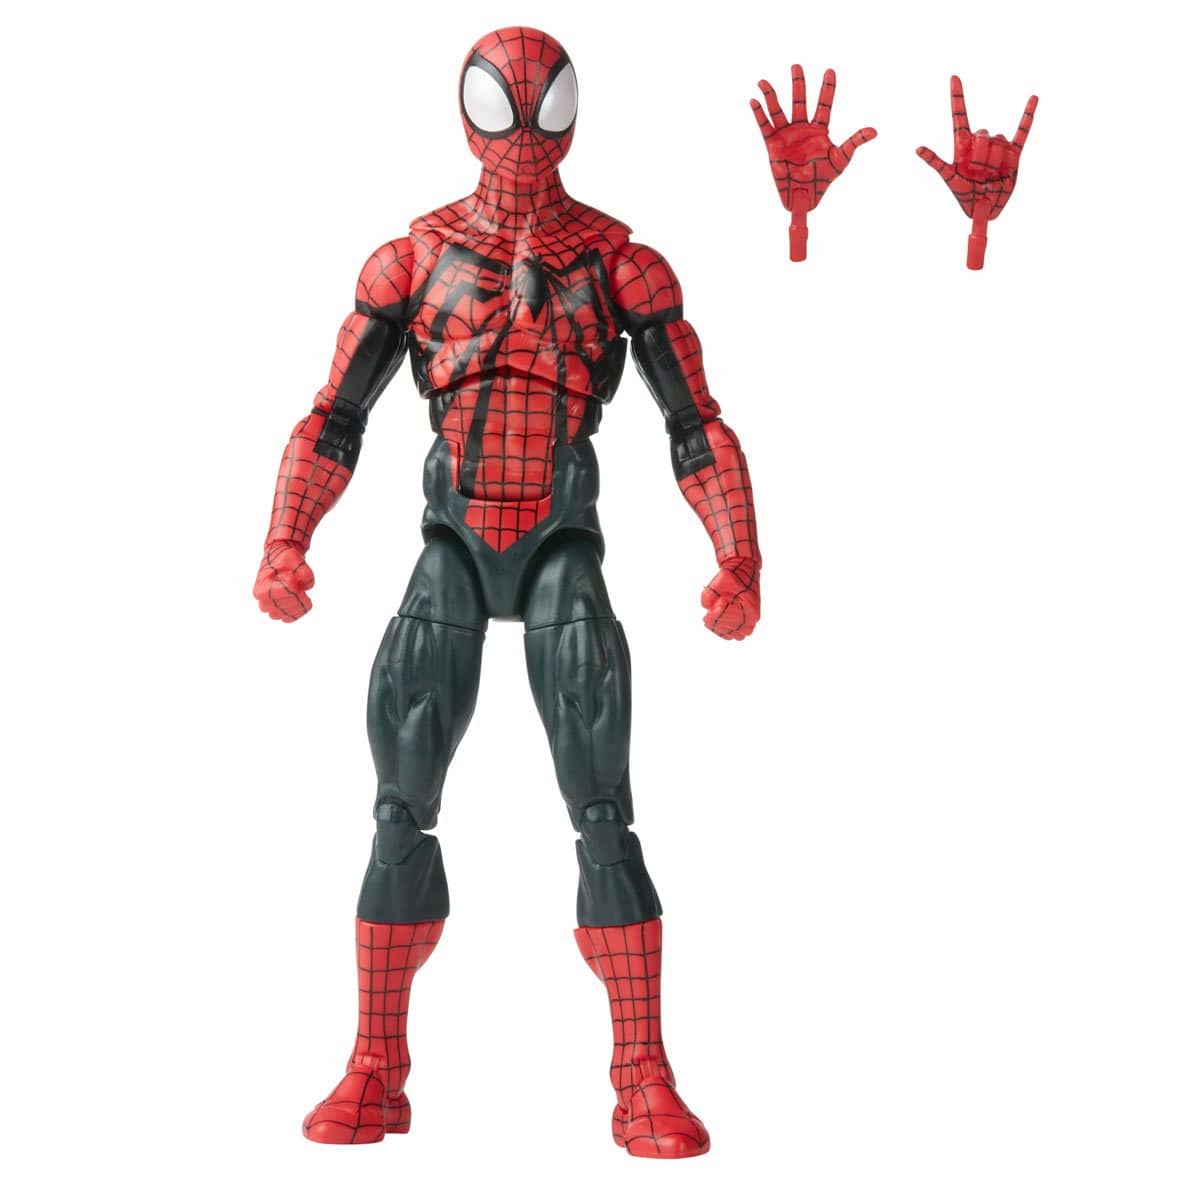 Spider-Man Retro Marvel Legends Ben Reilly Spider-Man 6-Inch Action Figure With Accessories 